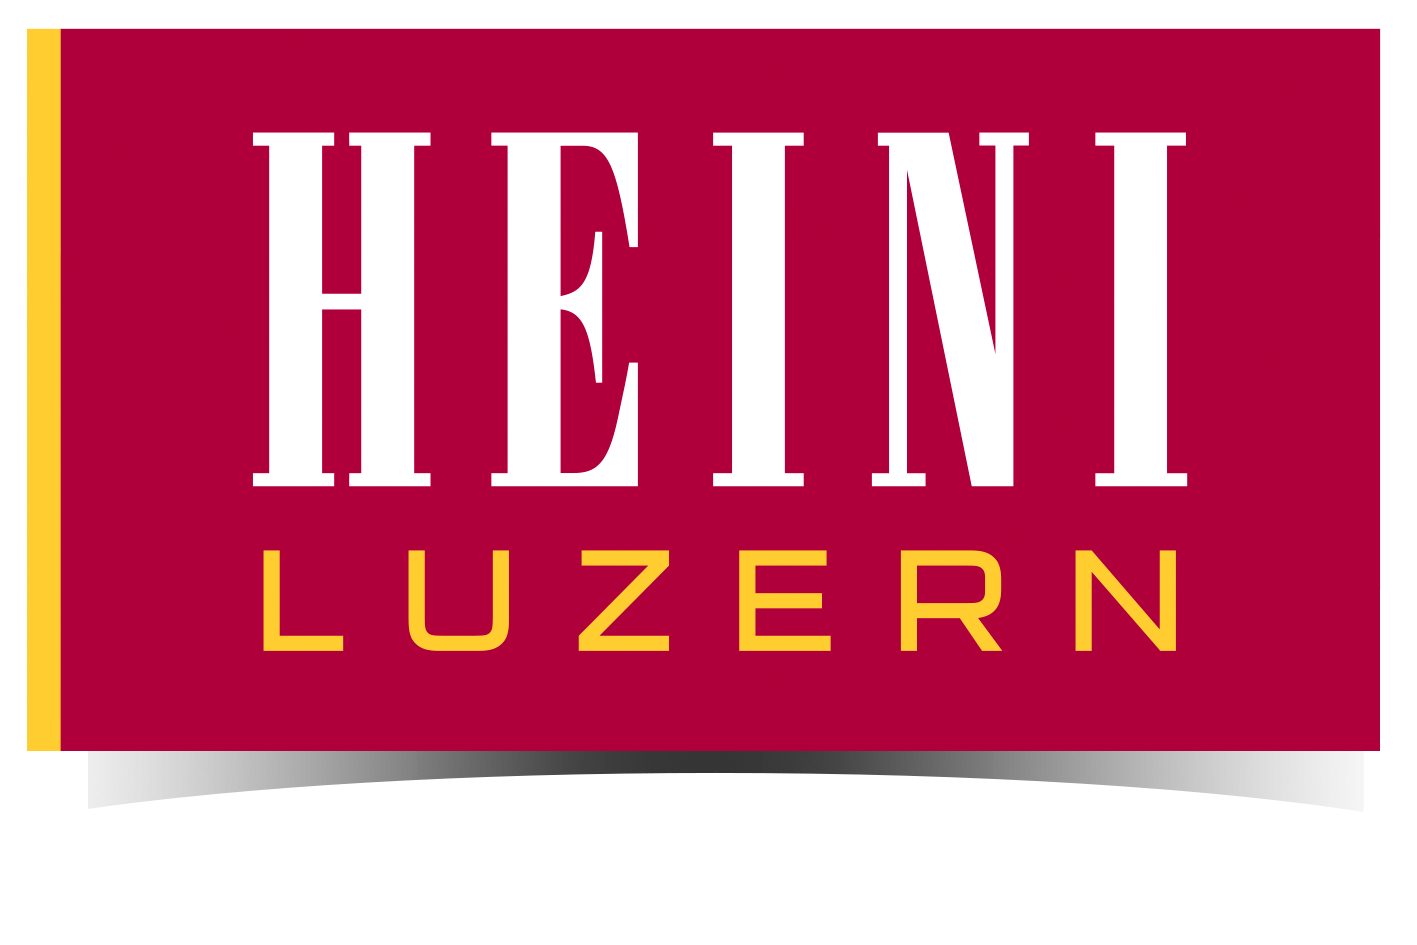 HEINI Luzern